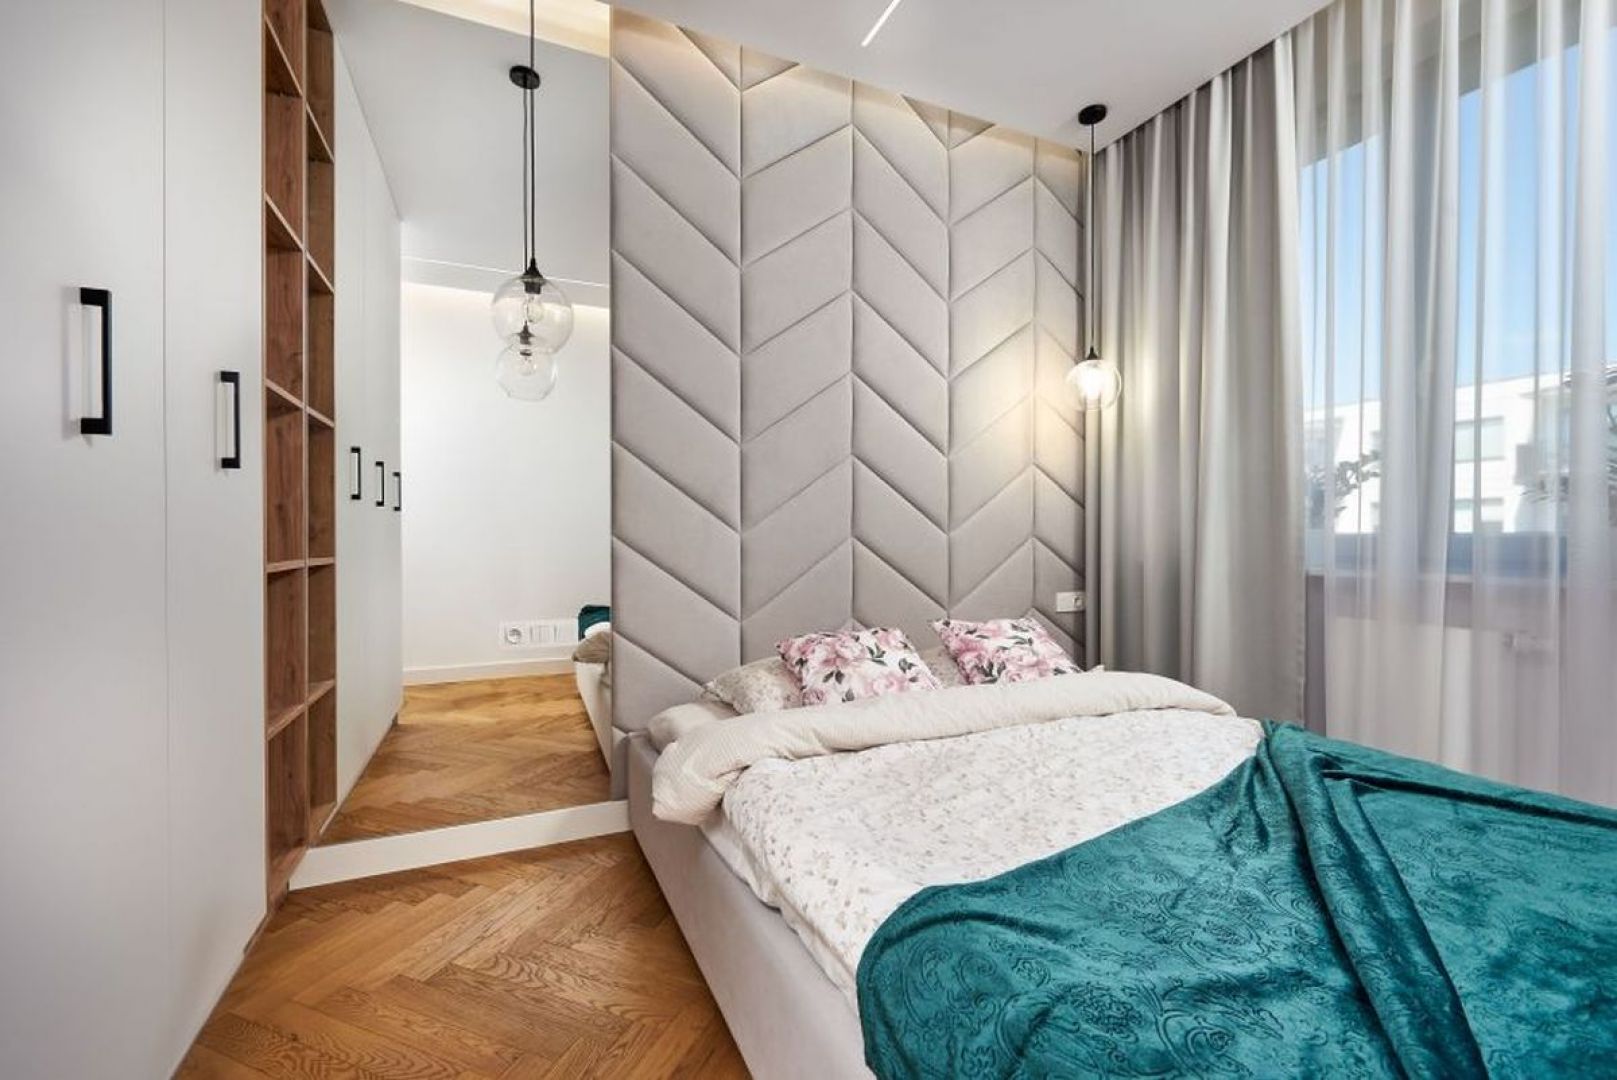 Ścianą za łóżkiem w małej sypialni pięknie zdobi tapicerowany zagłówek w jasnym, szarym kolorze, powiększają zaś duże lustra. Projekt: Kornelia Knapik Ziemnicka, Kora Design. Zdjęcie: Marek Królikowski